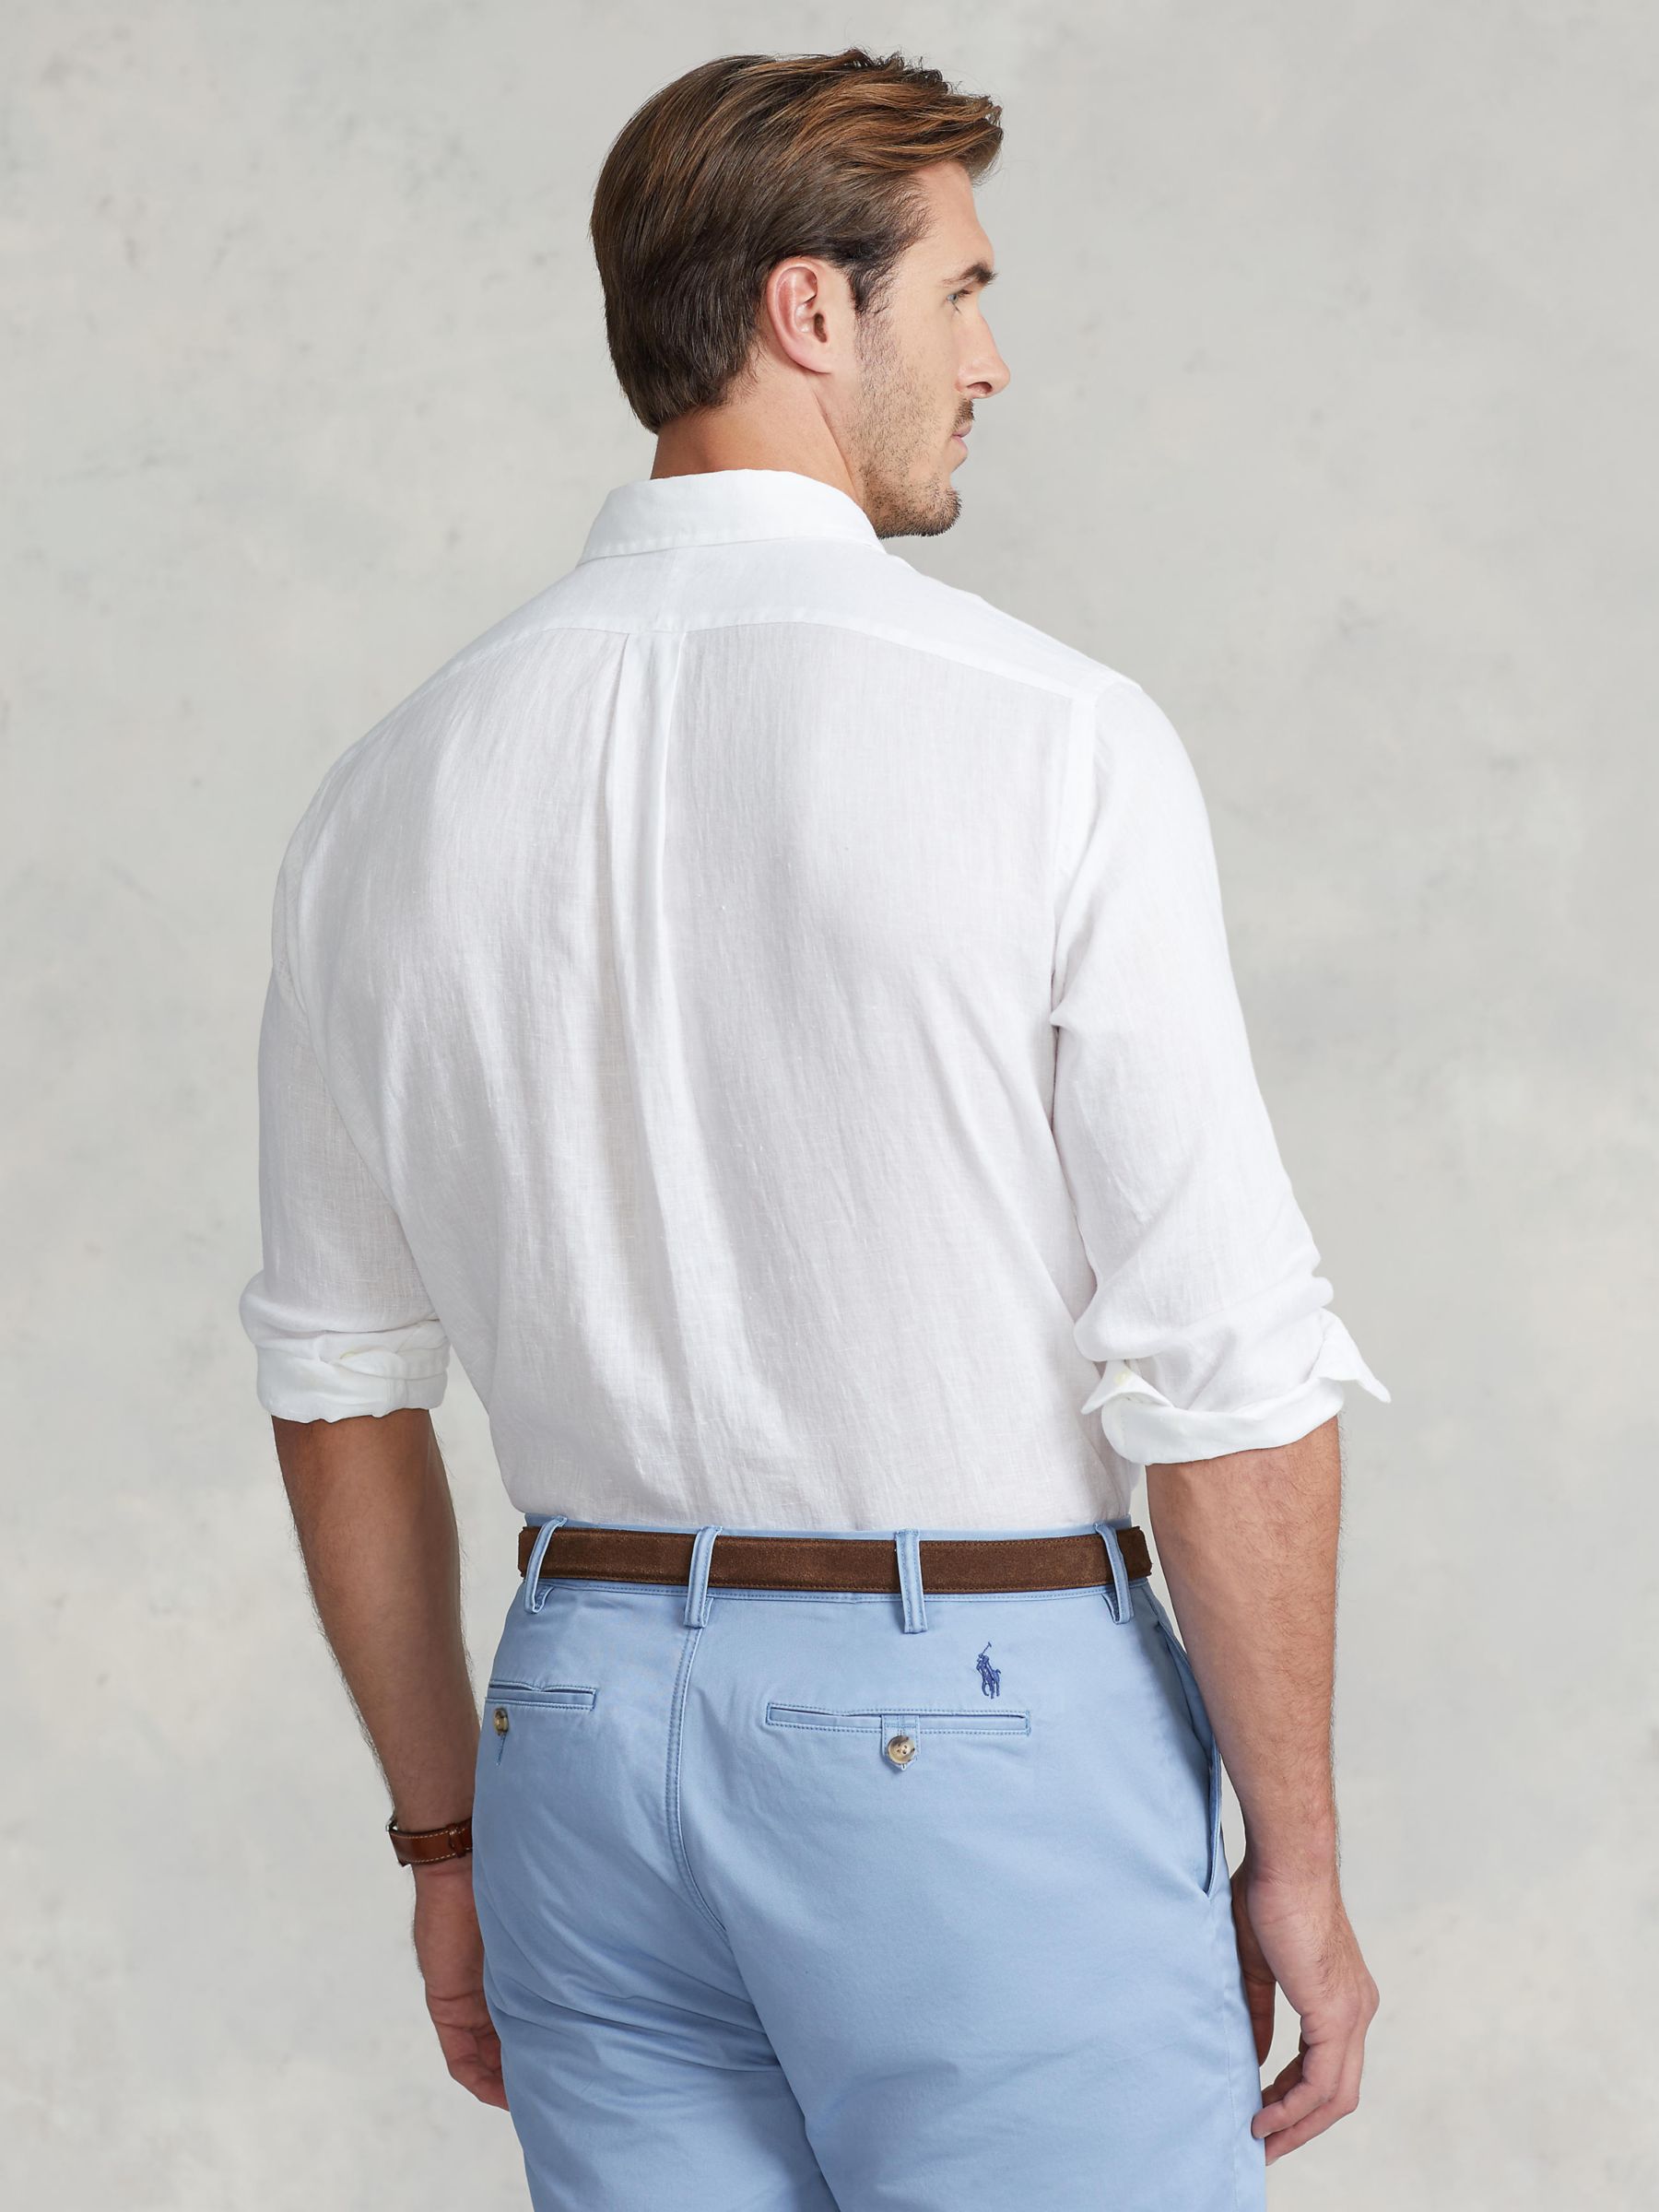 Ralph Lauren Big & Tall Long Sleeve Linen Shirt, White, LT